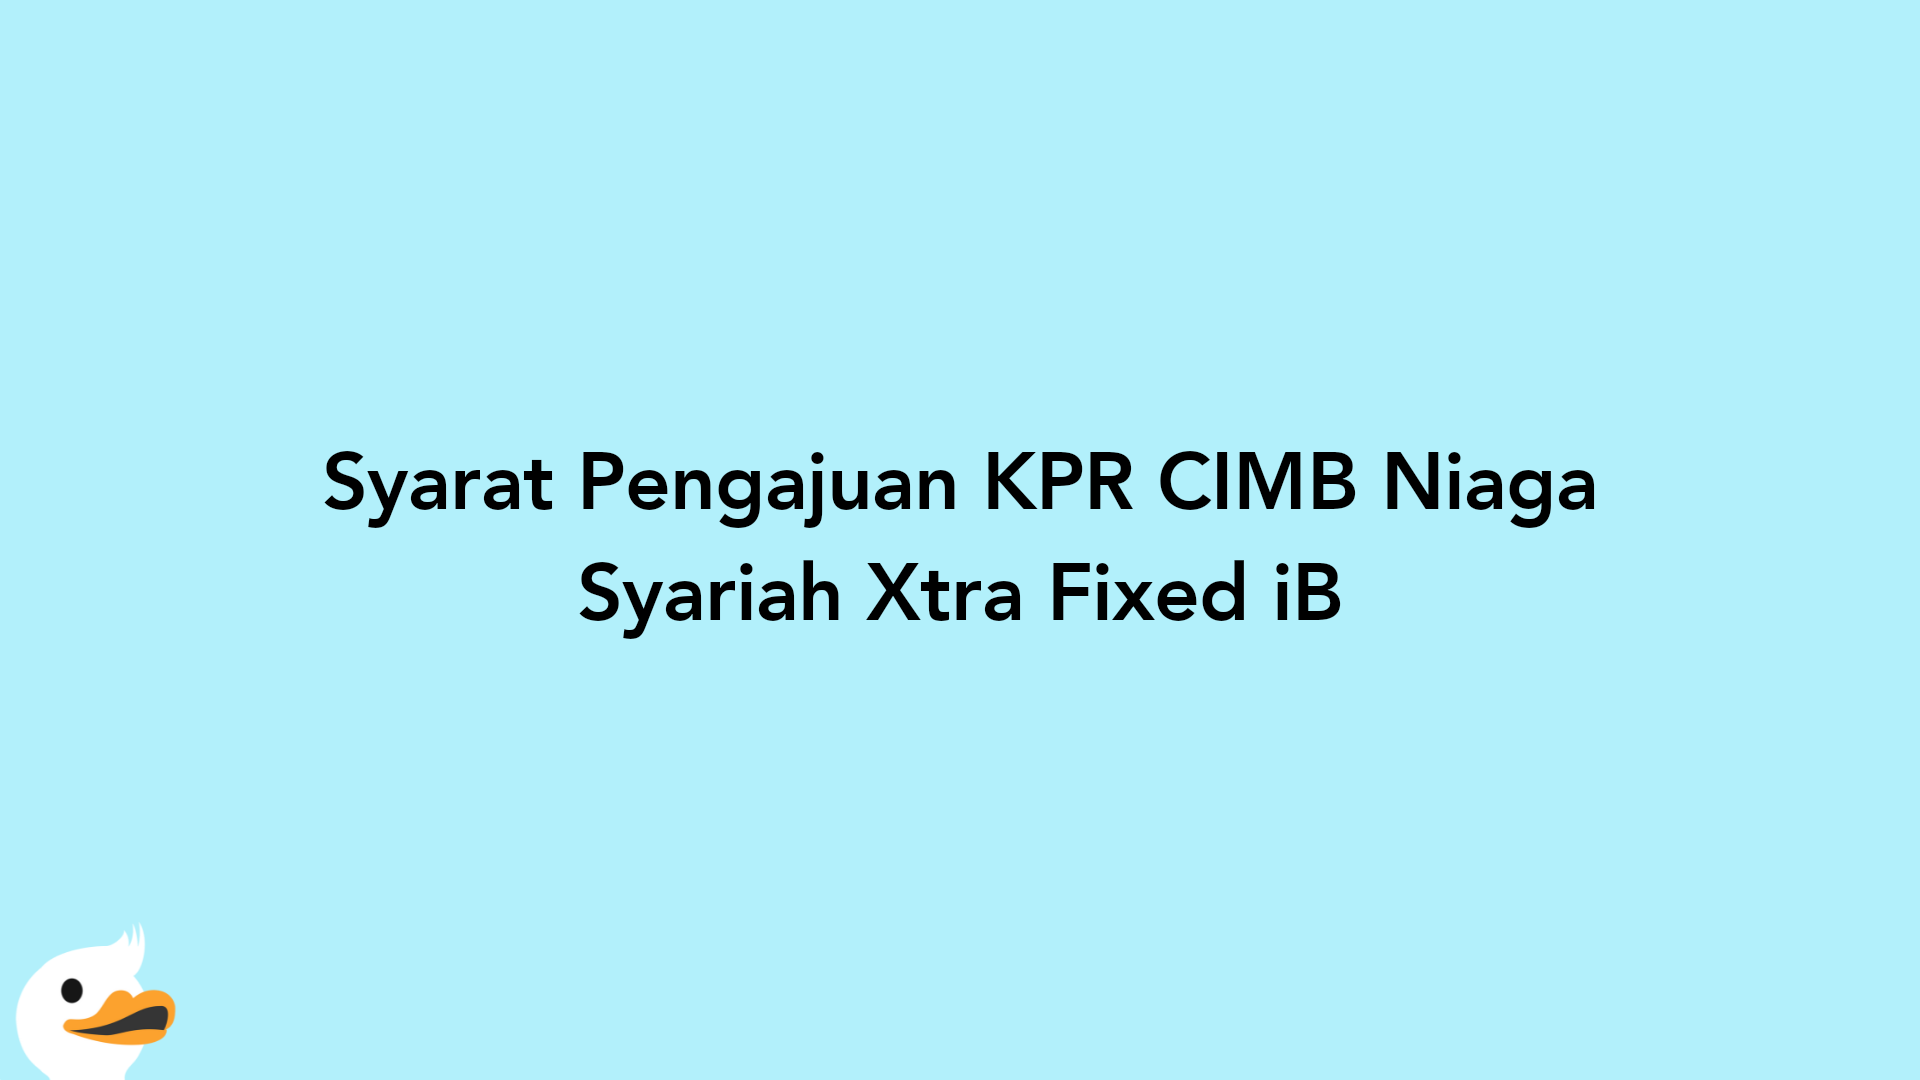 Syarat Pengajuan KPR CIMB Niaga Syariah Xtra Fixed iB